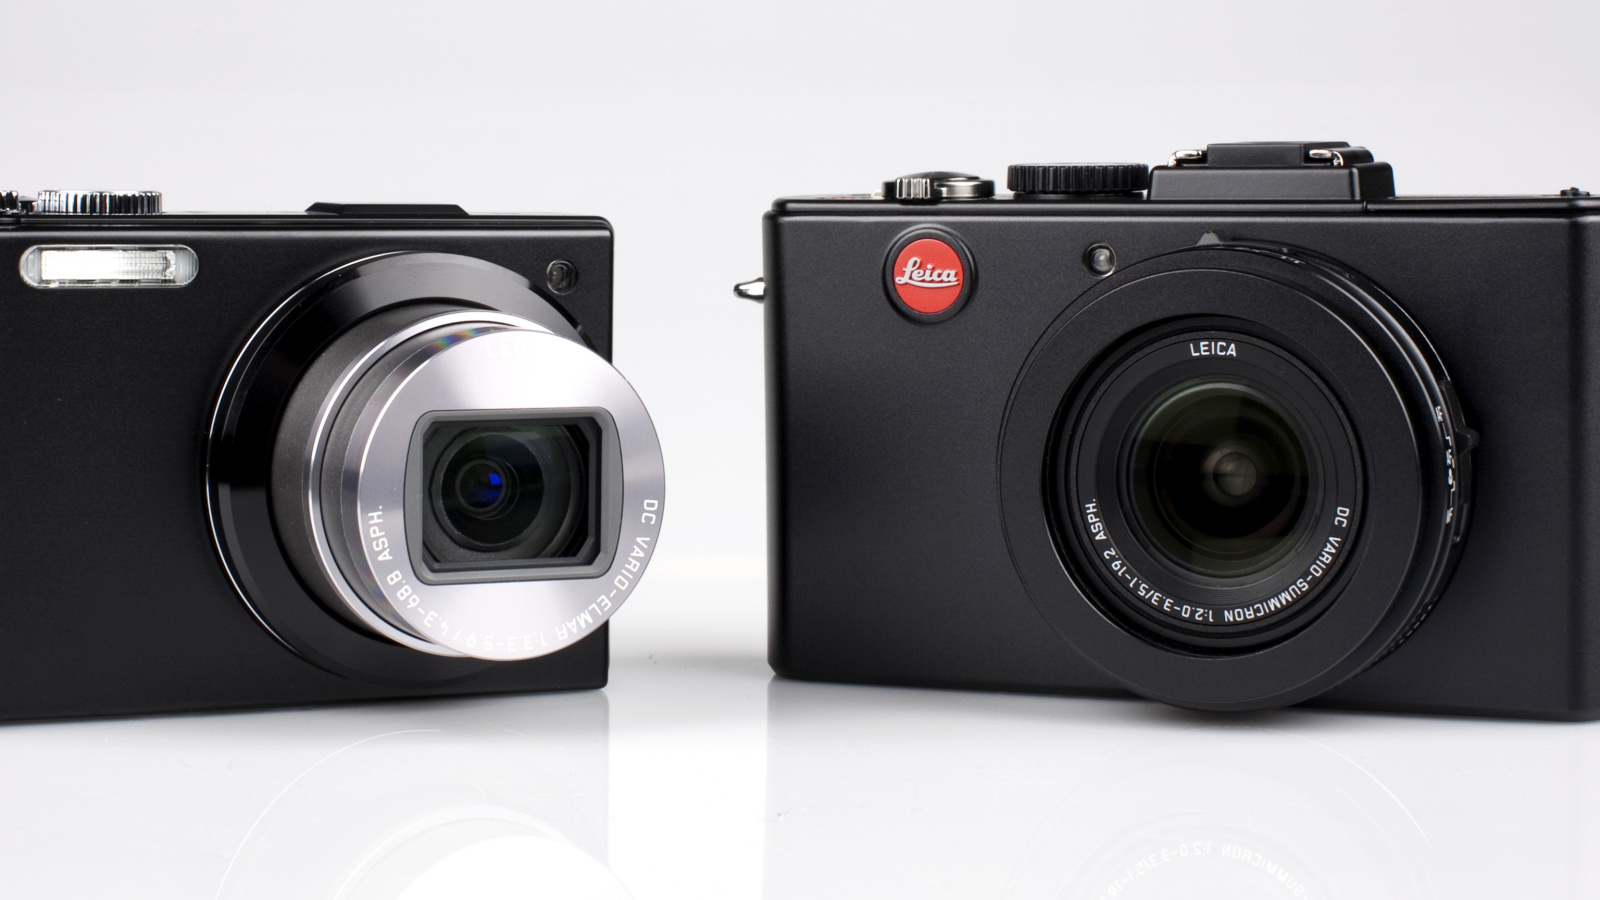 Das Leica D Lux 5 and Leica V LUX 1 Wallpaper 1600x900